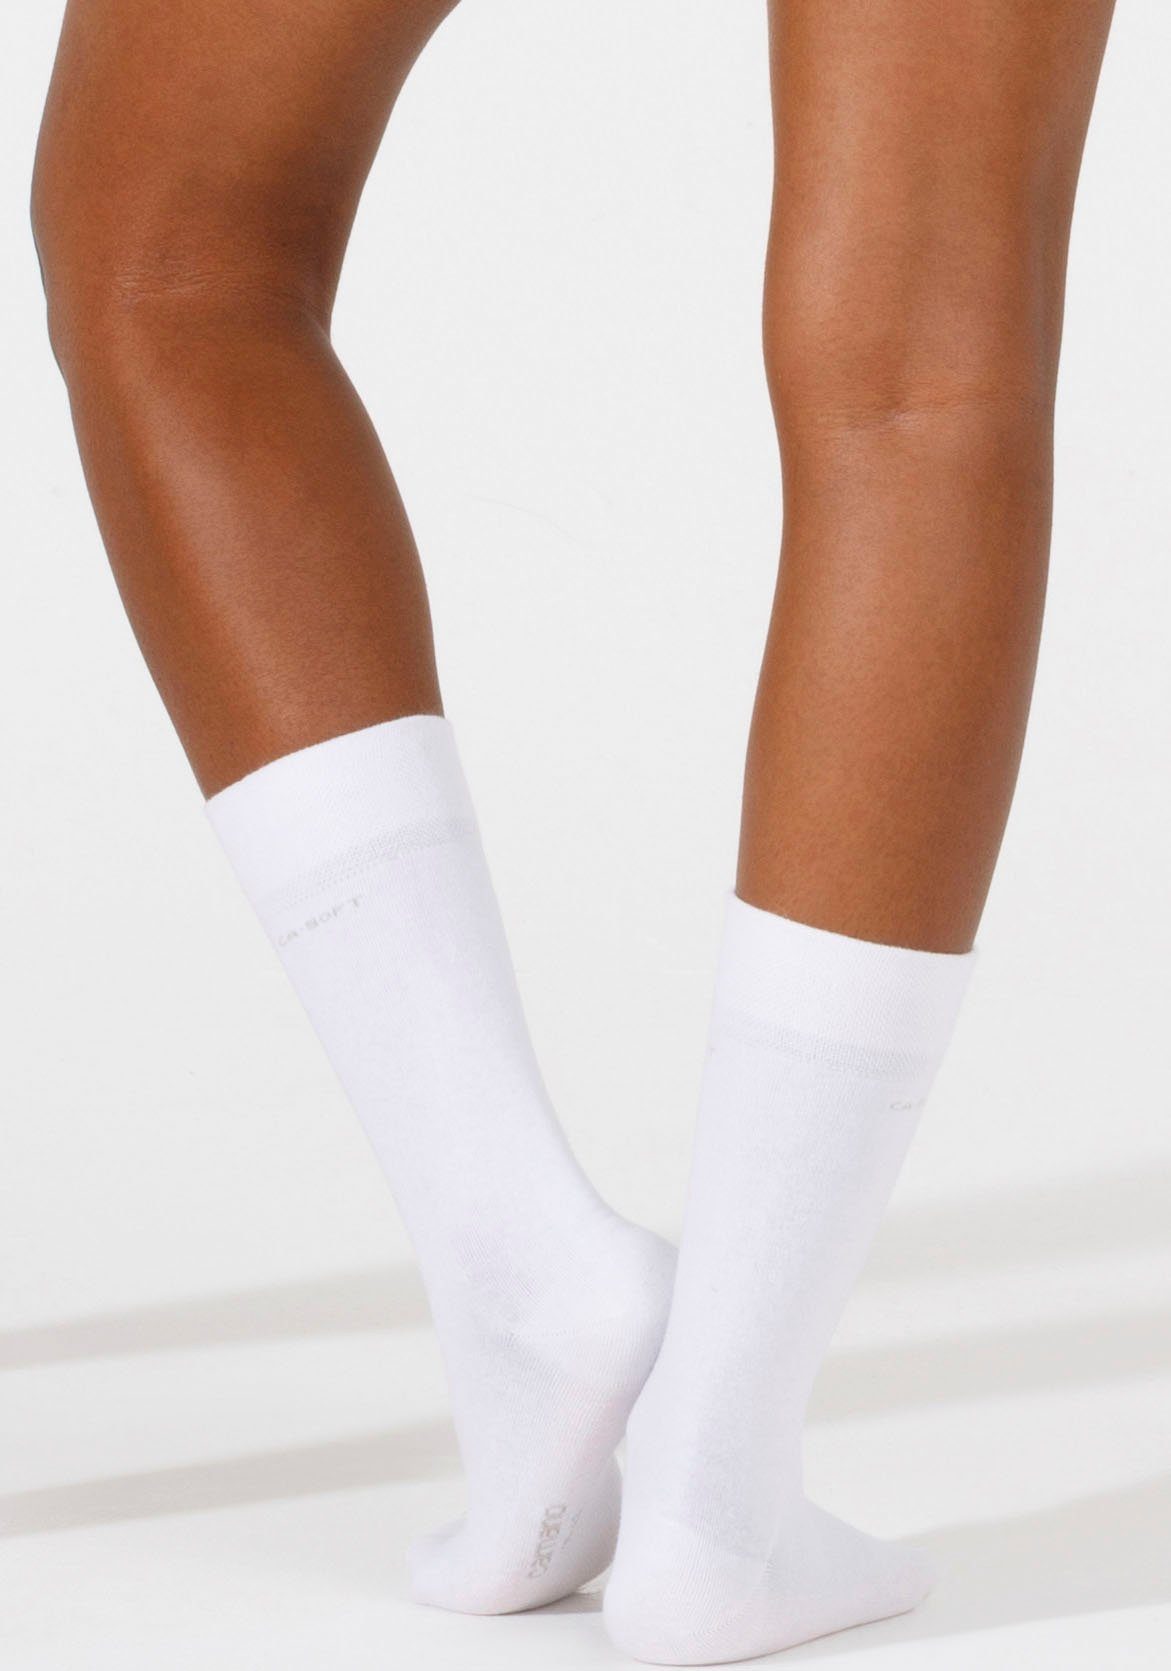 Mit Camano verstärktem (Packung, Socken und Fersen- Zehenbereich weiß 4-Paar)